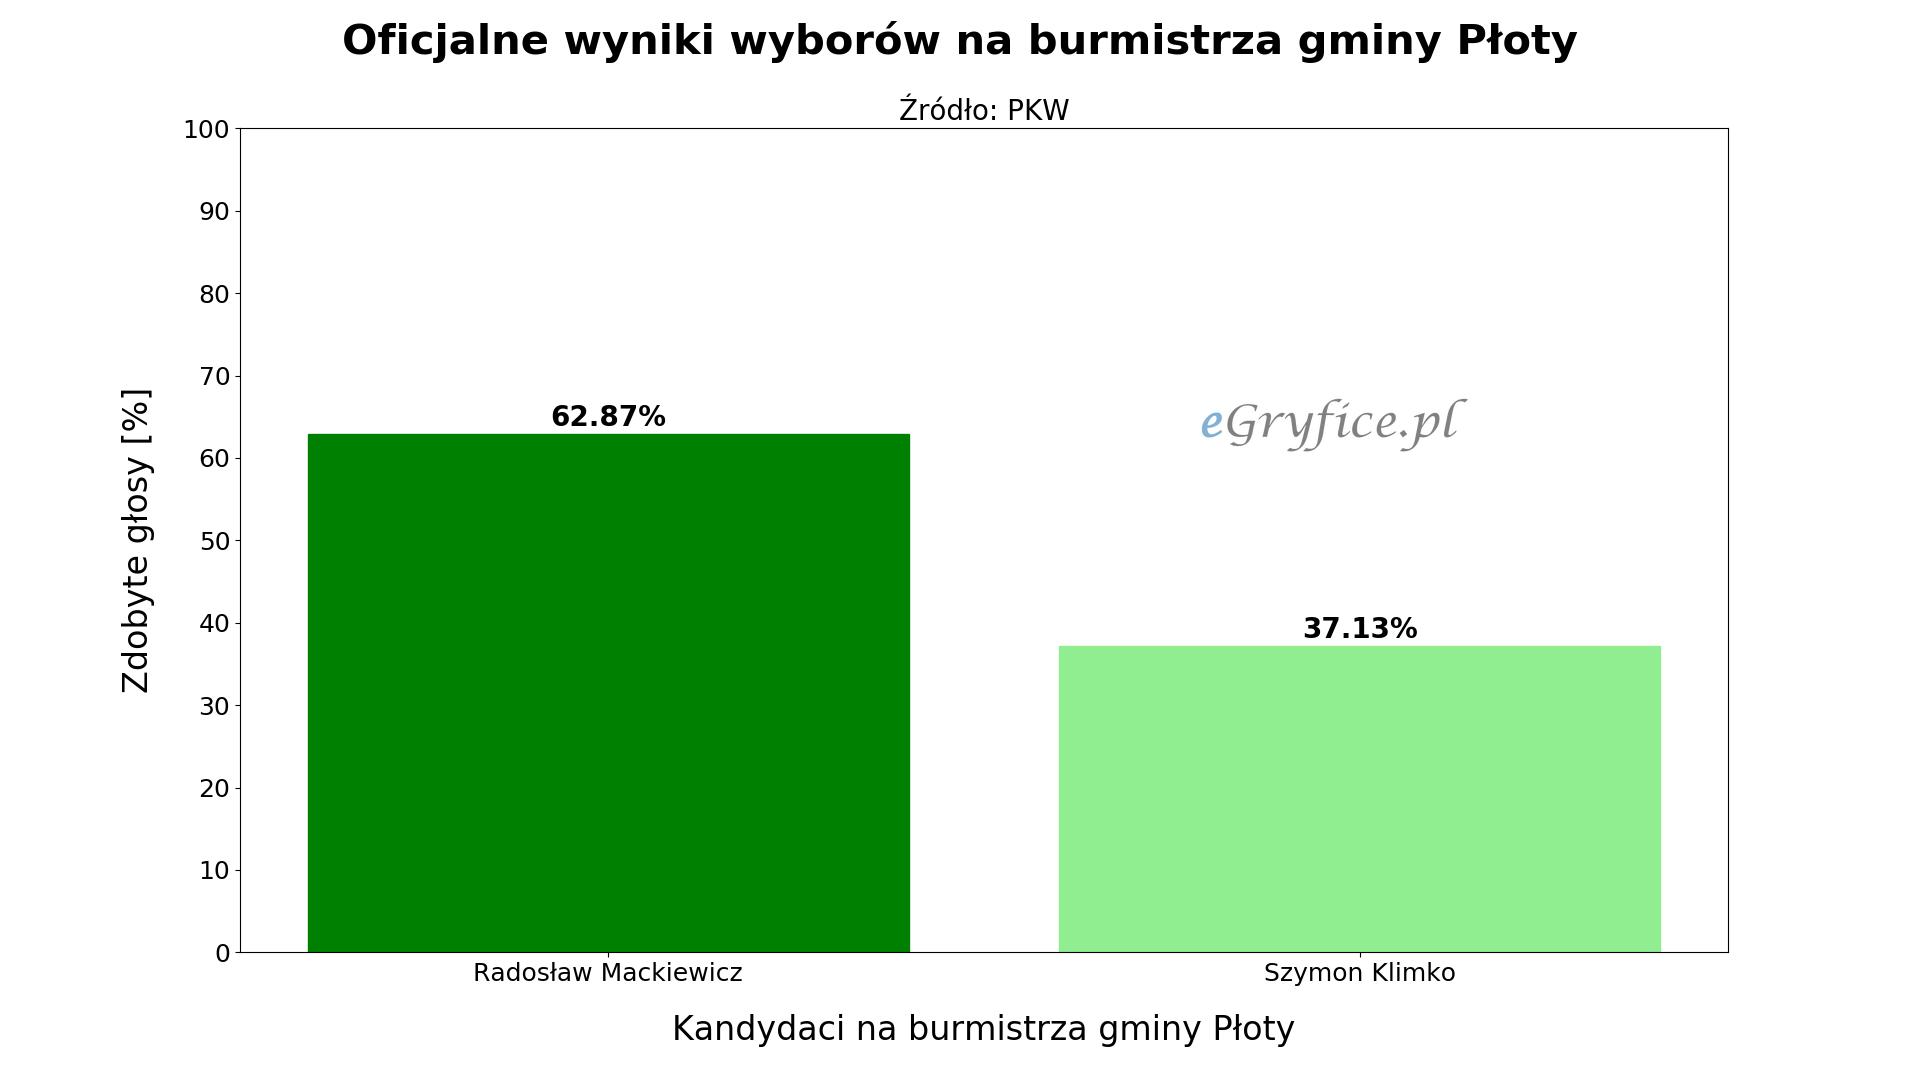 Oficjalne wyniki drugiej tury wyborów na burmistrza Płotów. Wykres przedstawia procentowy podział głosów na Radosława Mackiewicza i Szymona Klimko